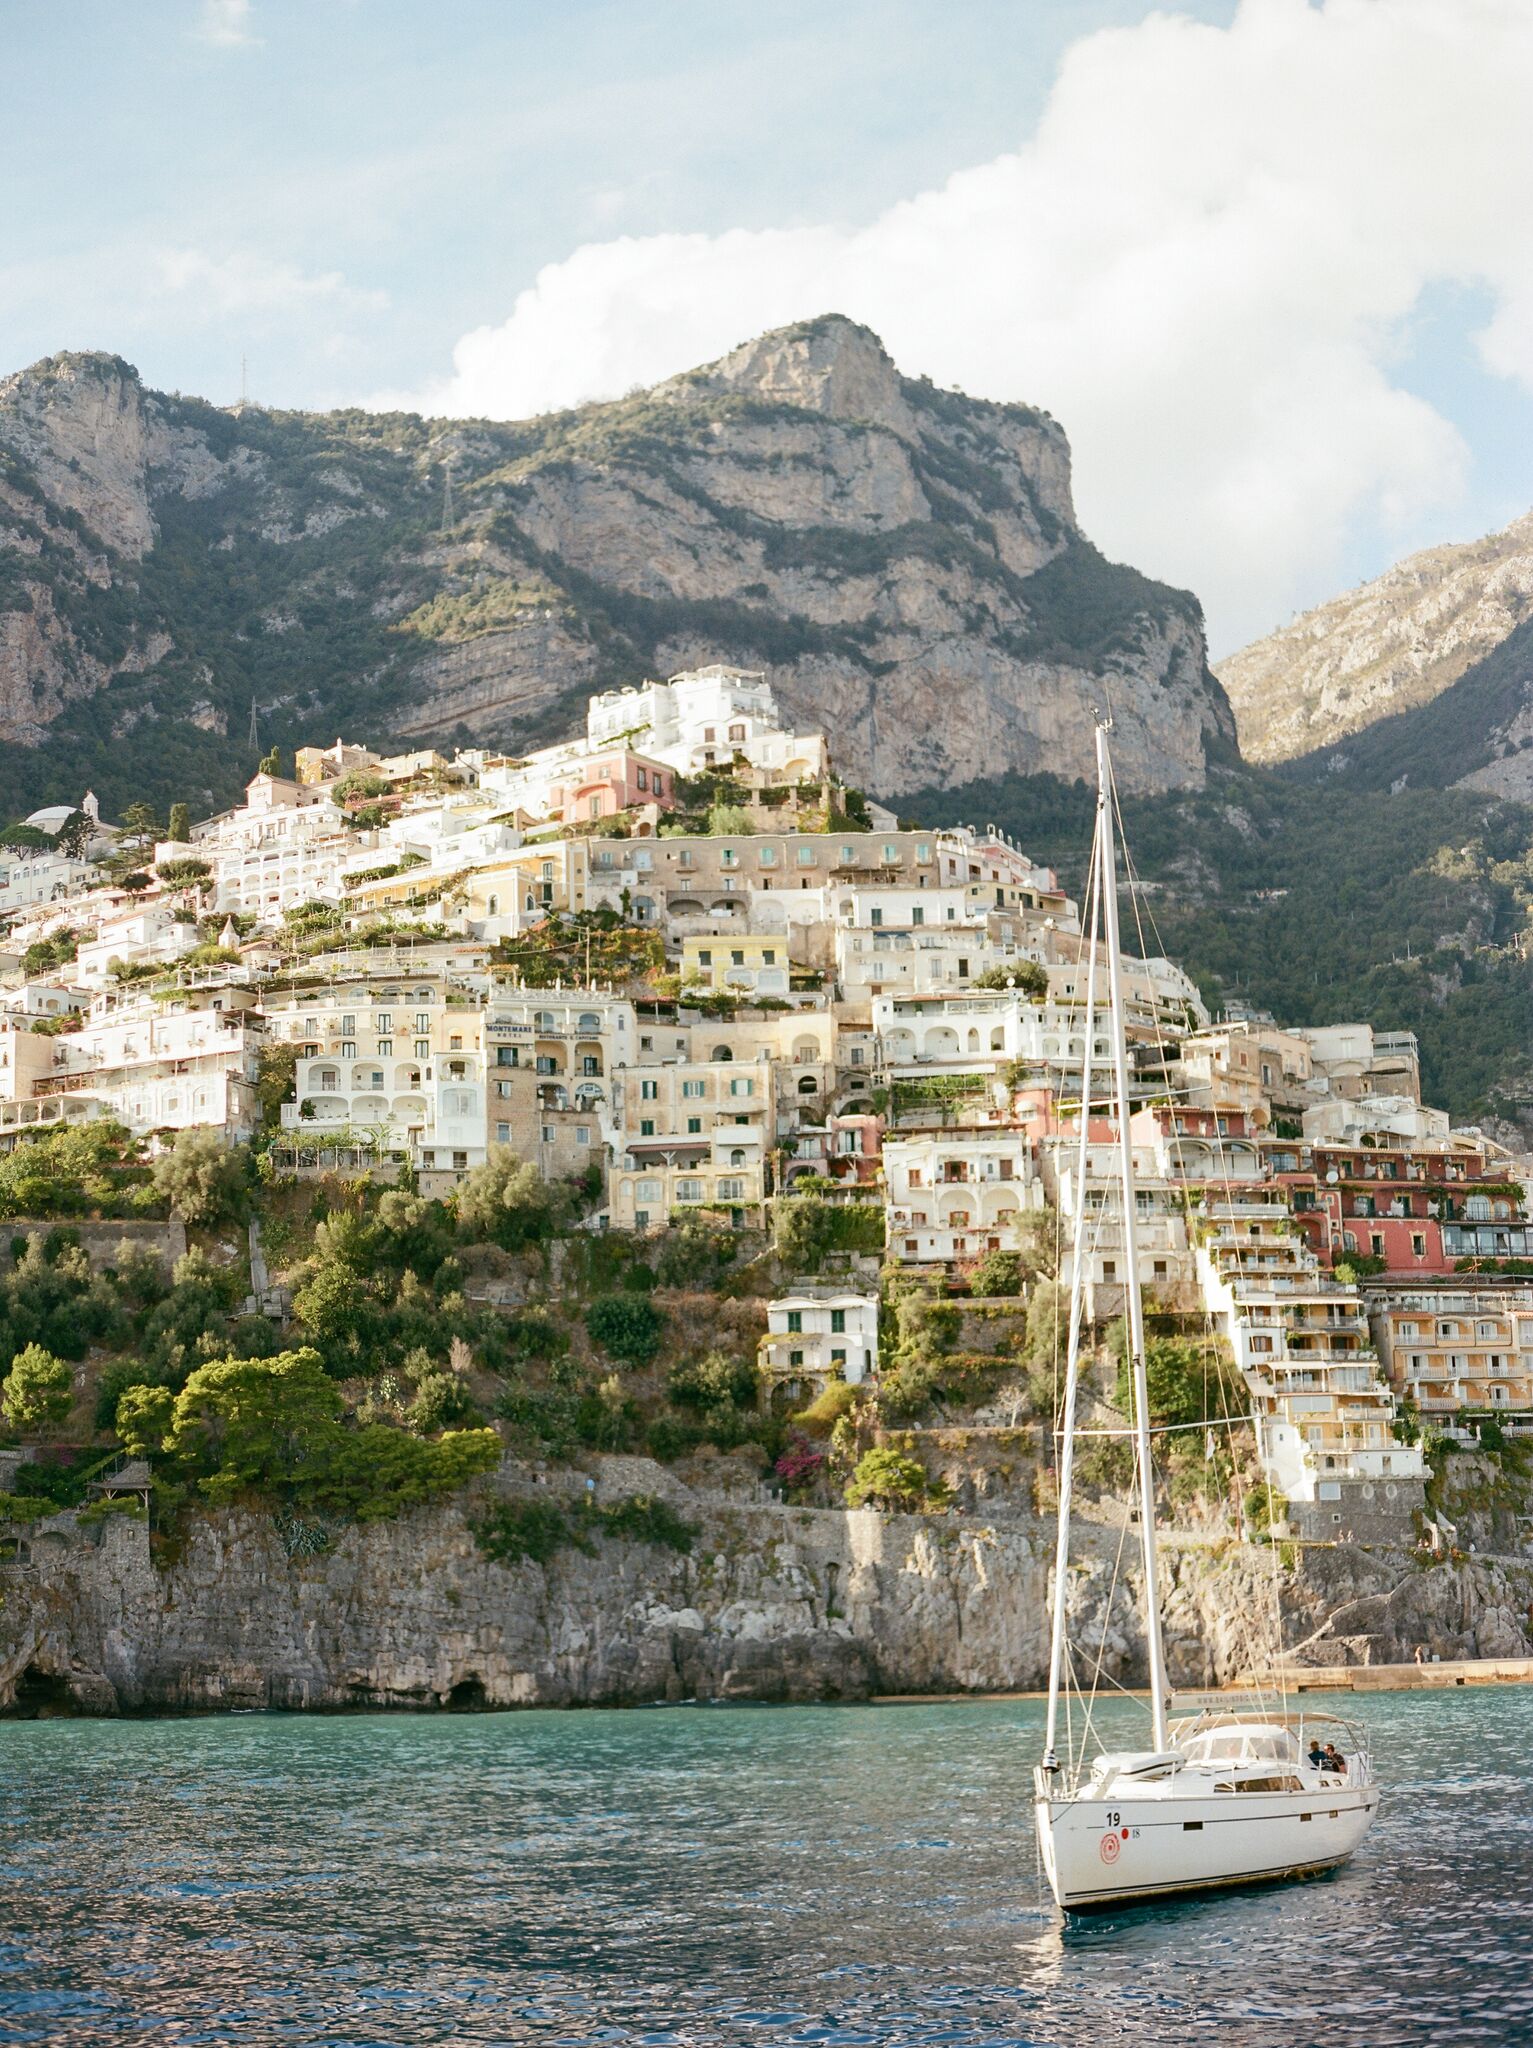 Amalfi Coast sailboat and buildings